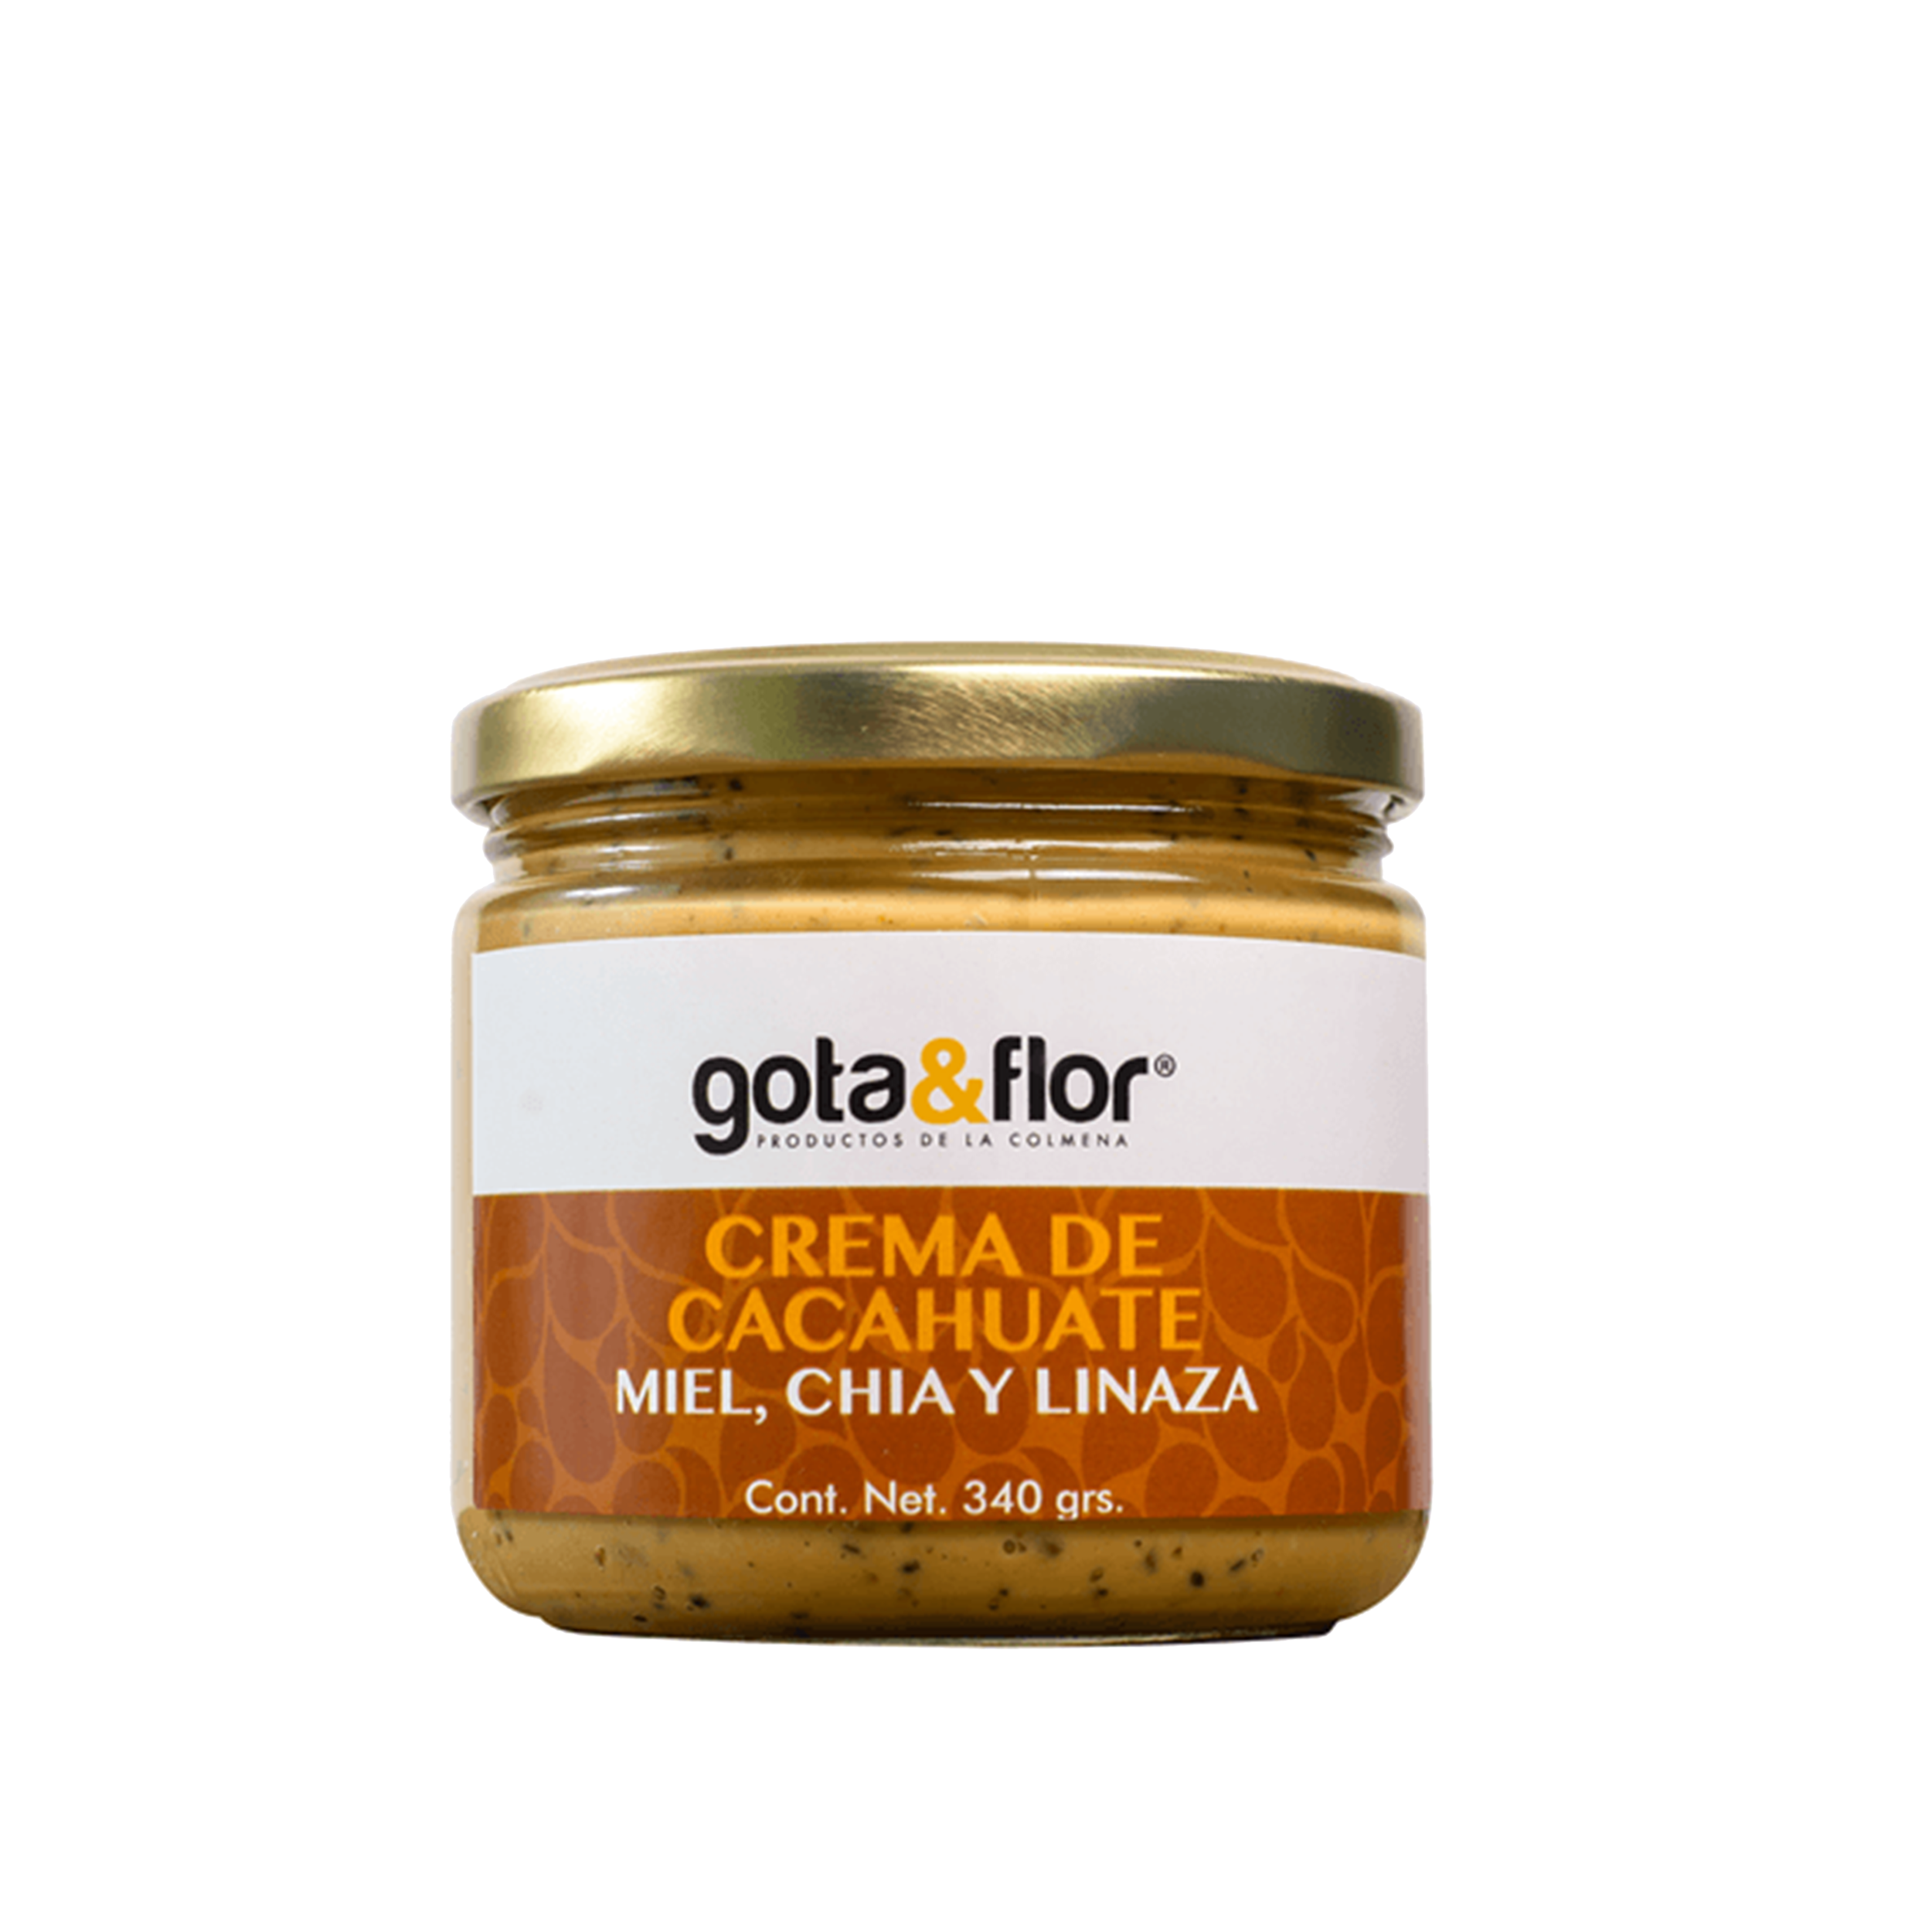 Gota y flor - Crema de cacahuate con miel, linaza y chía 340 G